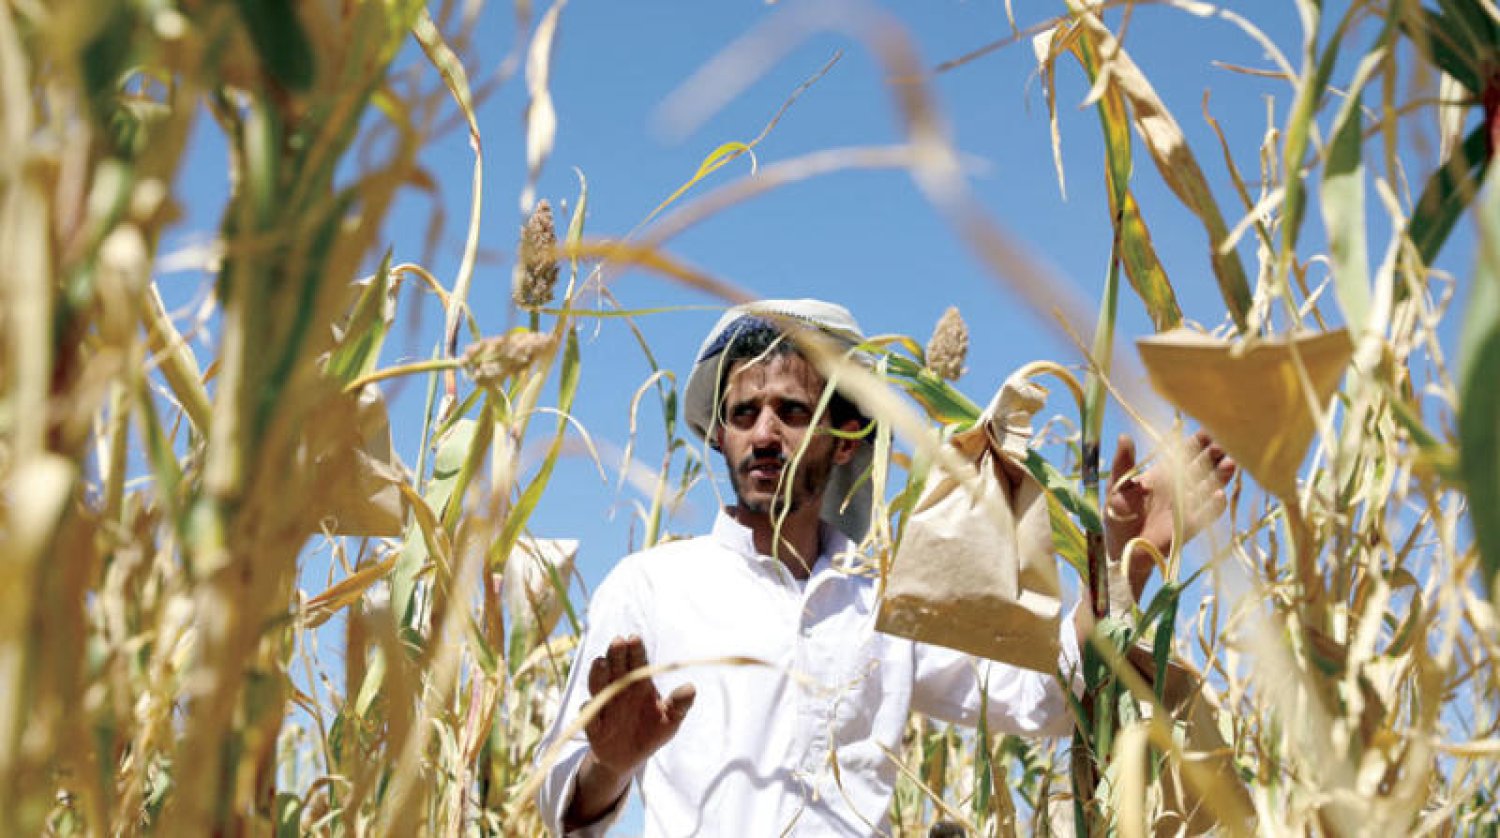 دعوات لمقاطعة المنتجات الزراعية والصناعية التي تأتي من مناطق مليشيا الحوثي